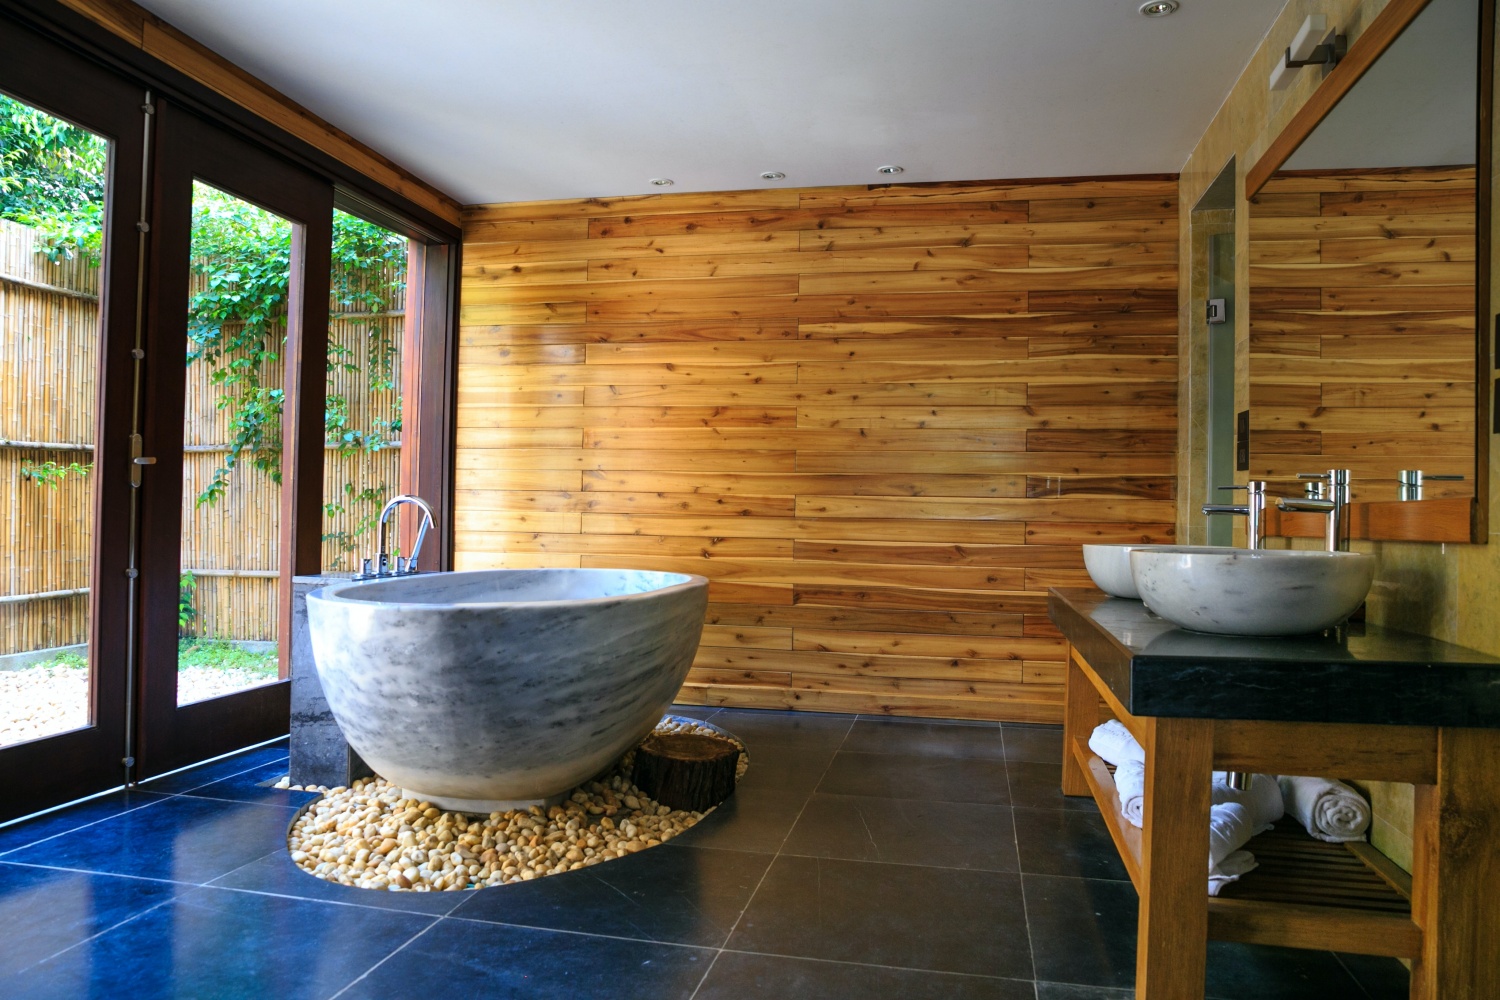 Ванная комната в деревянном доме: особенности обустройства | Статьи ДеревоДом